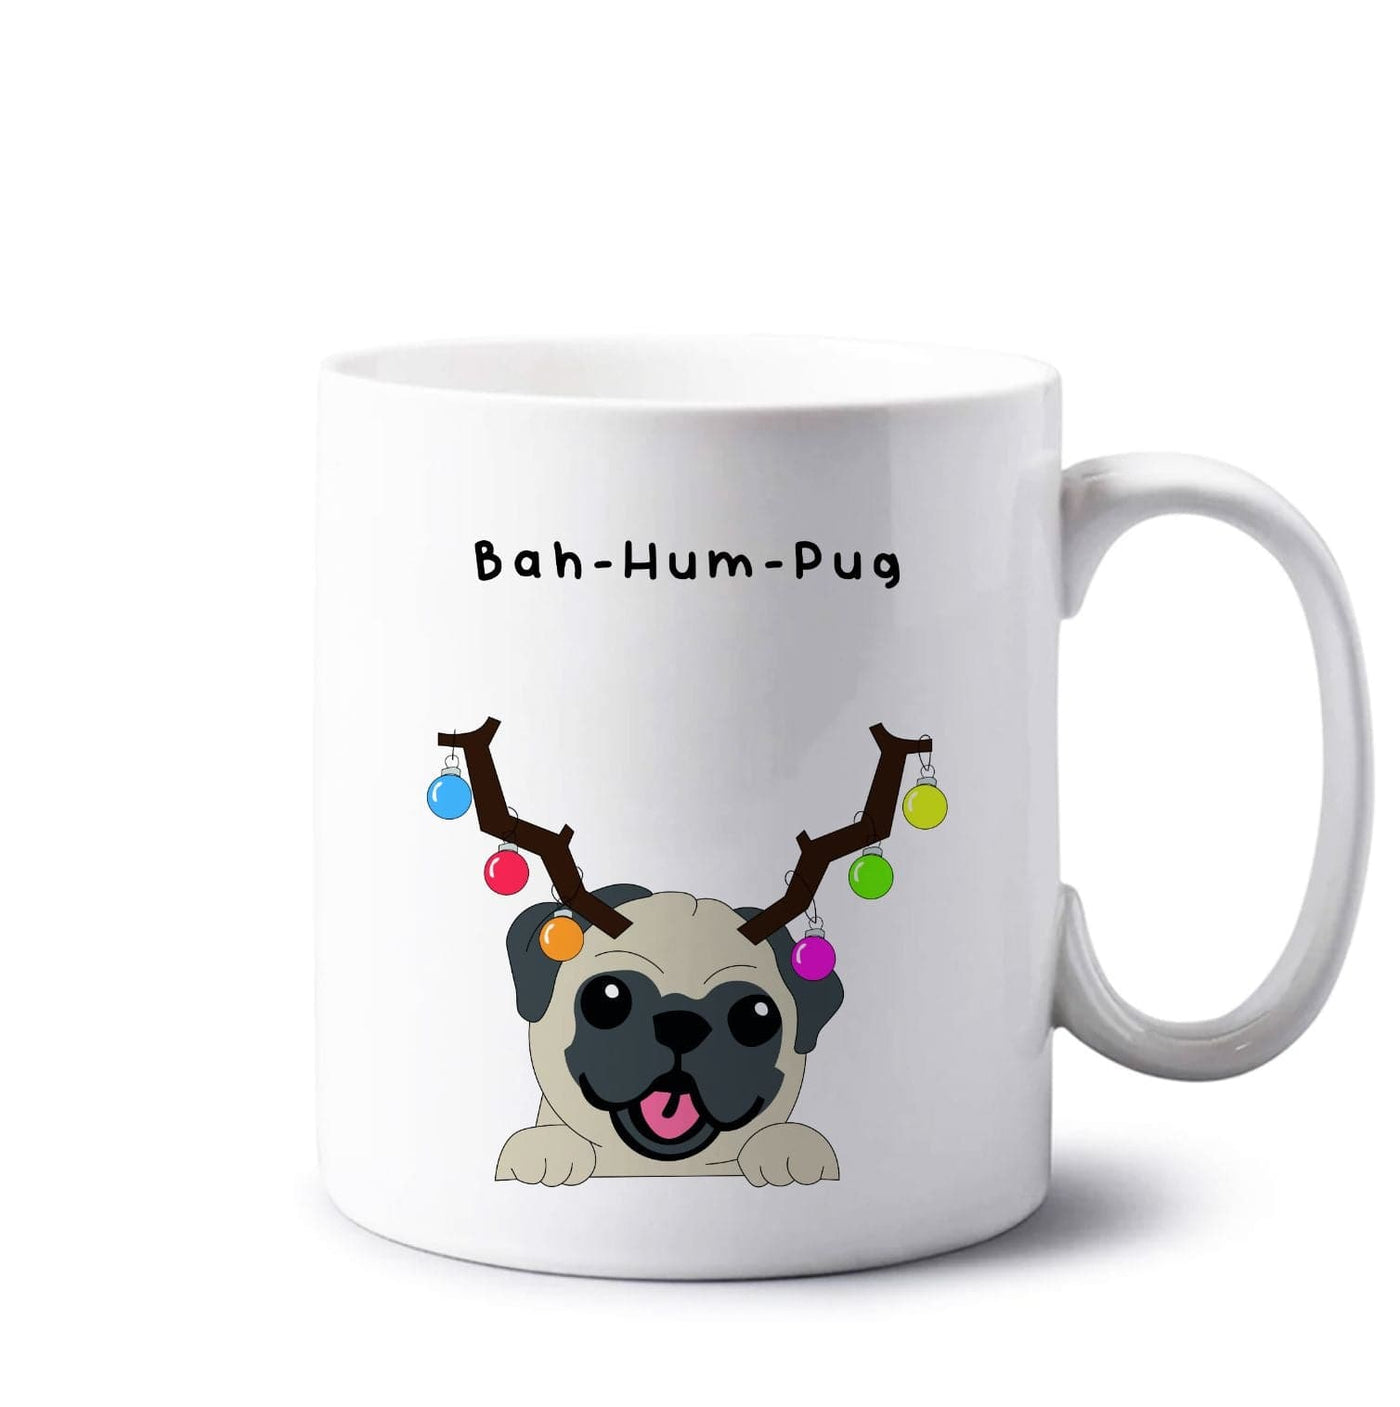 Buh-hum-pug - Christmas Mug